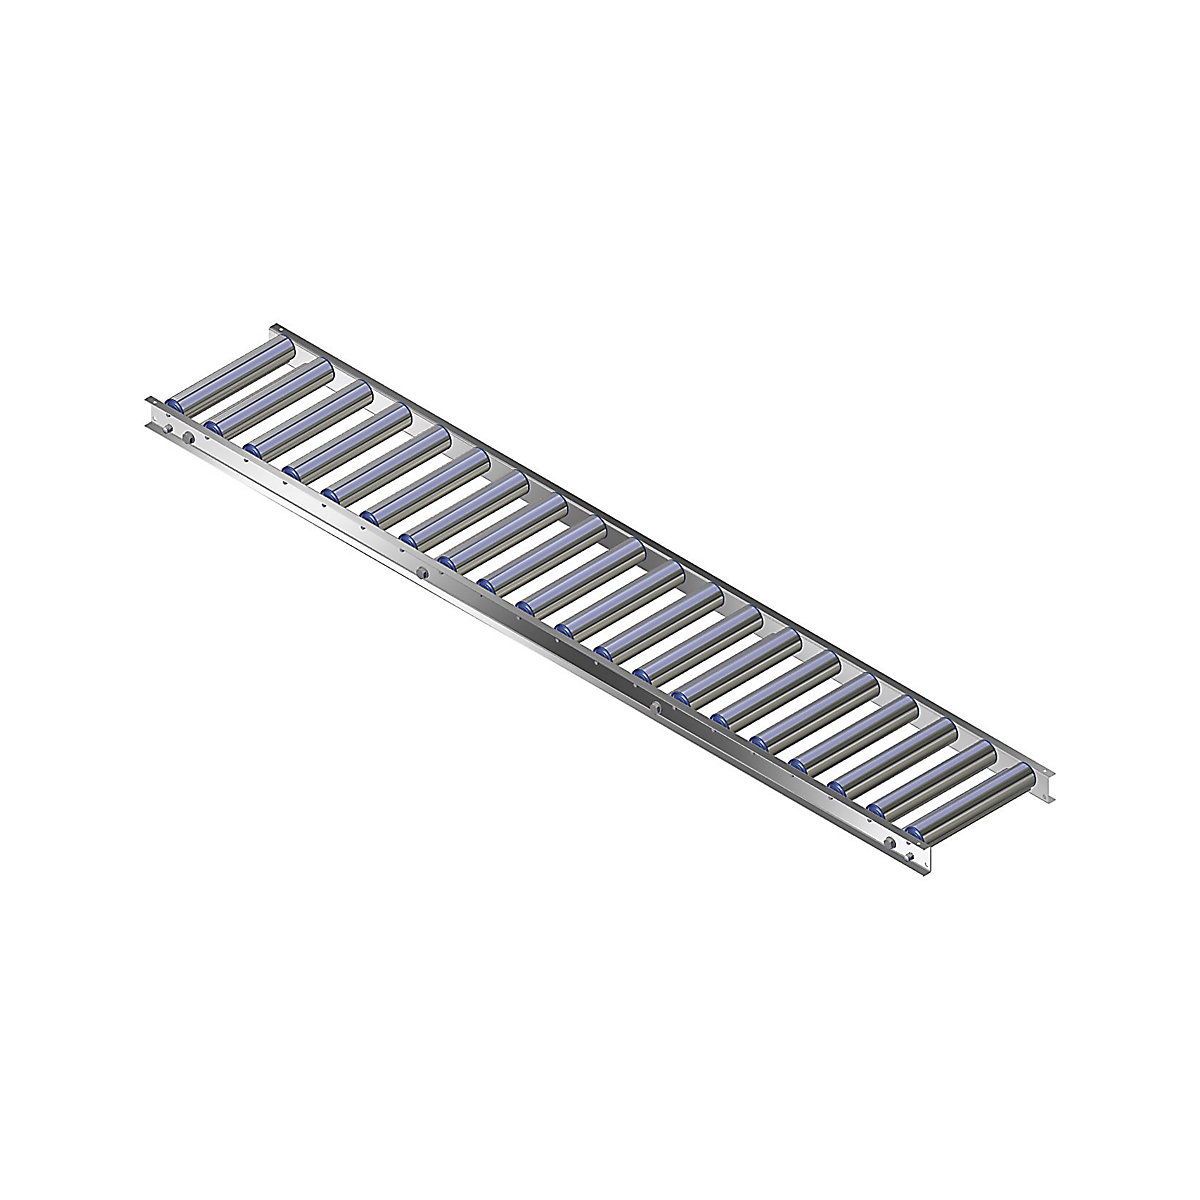 Ľahká valčeková dráha, hliníkový rám s hliníkovými valčekmi – Gura, šírka dráhy 300 mm, vzdialenosť osí 75 mm, dĺžka 1,5 m